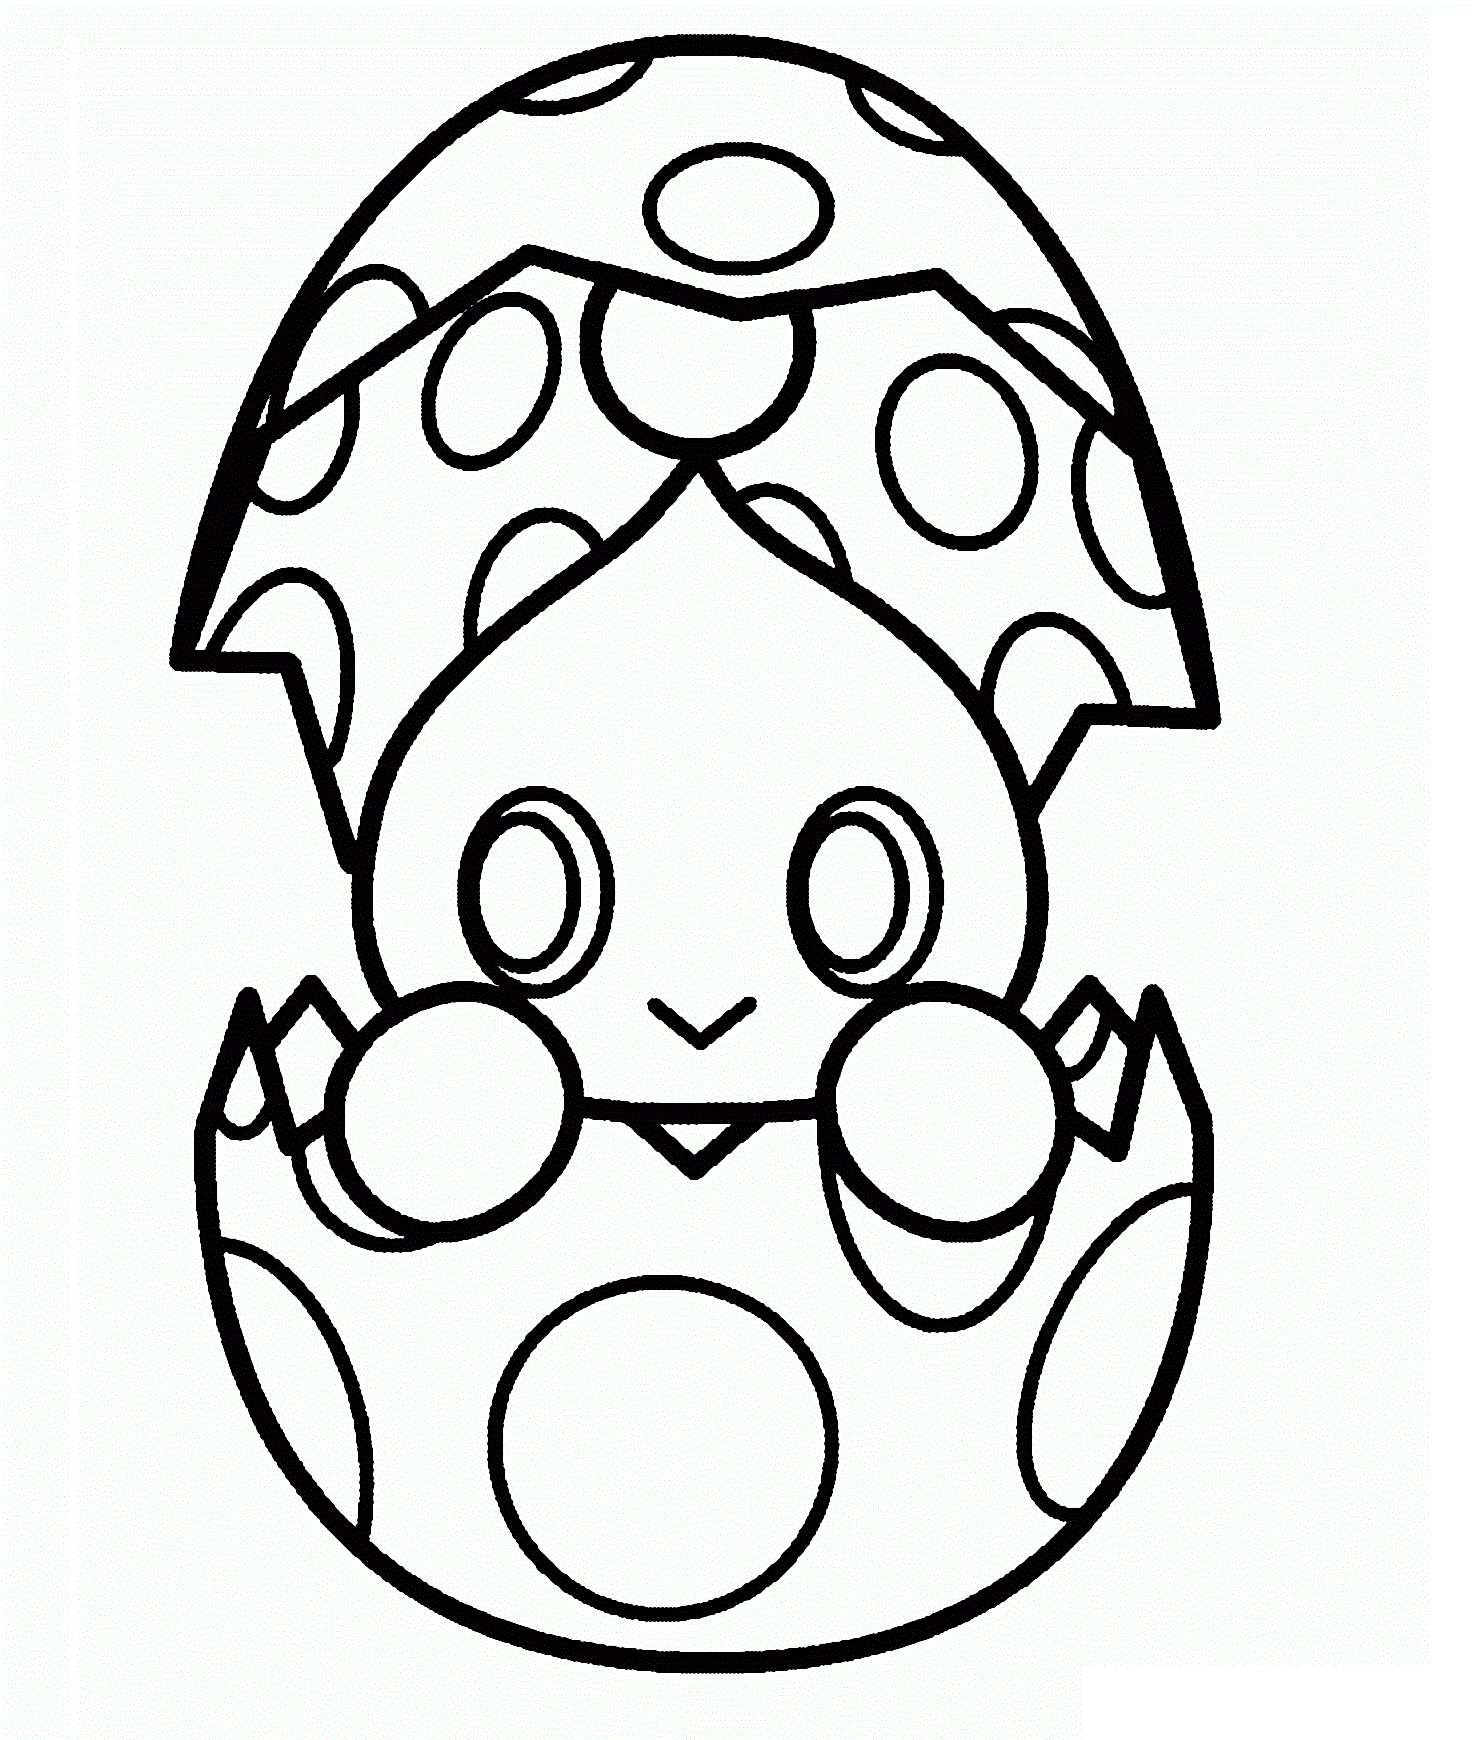 Dibujos de Chao En La Cáscara De Huevo para colorear